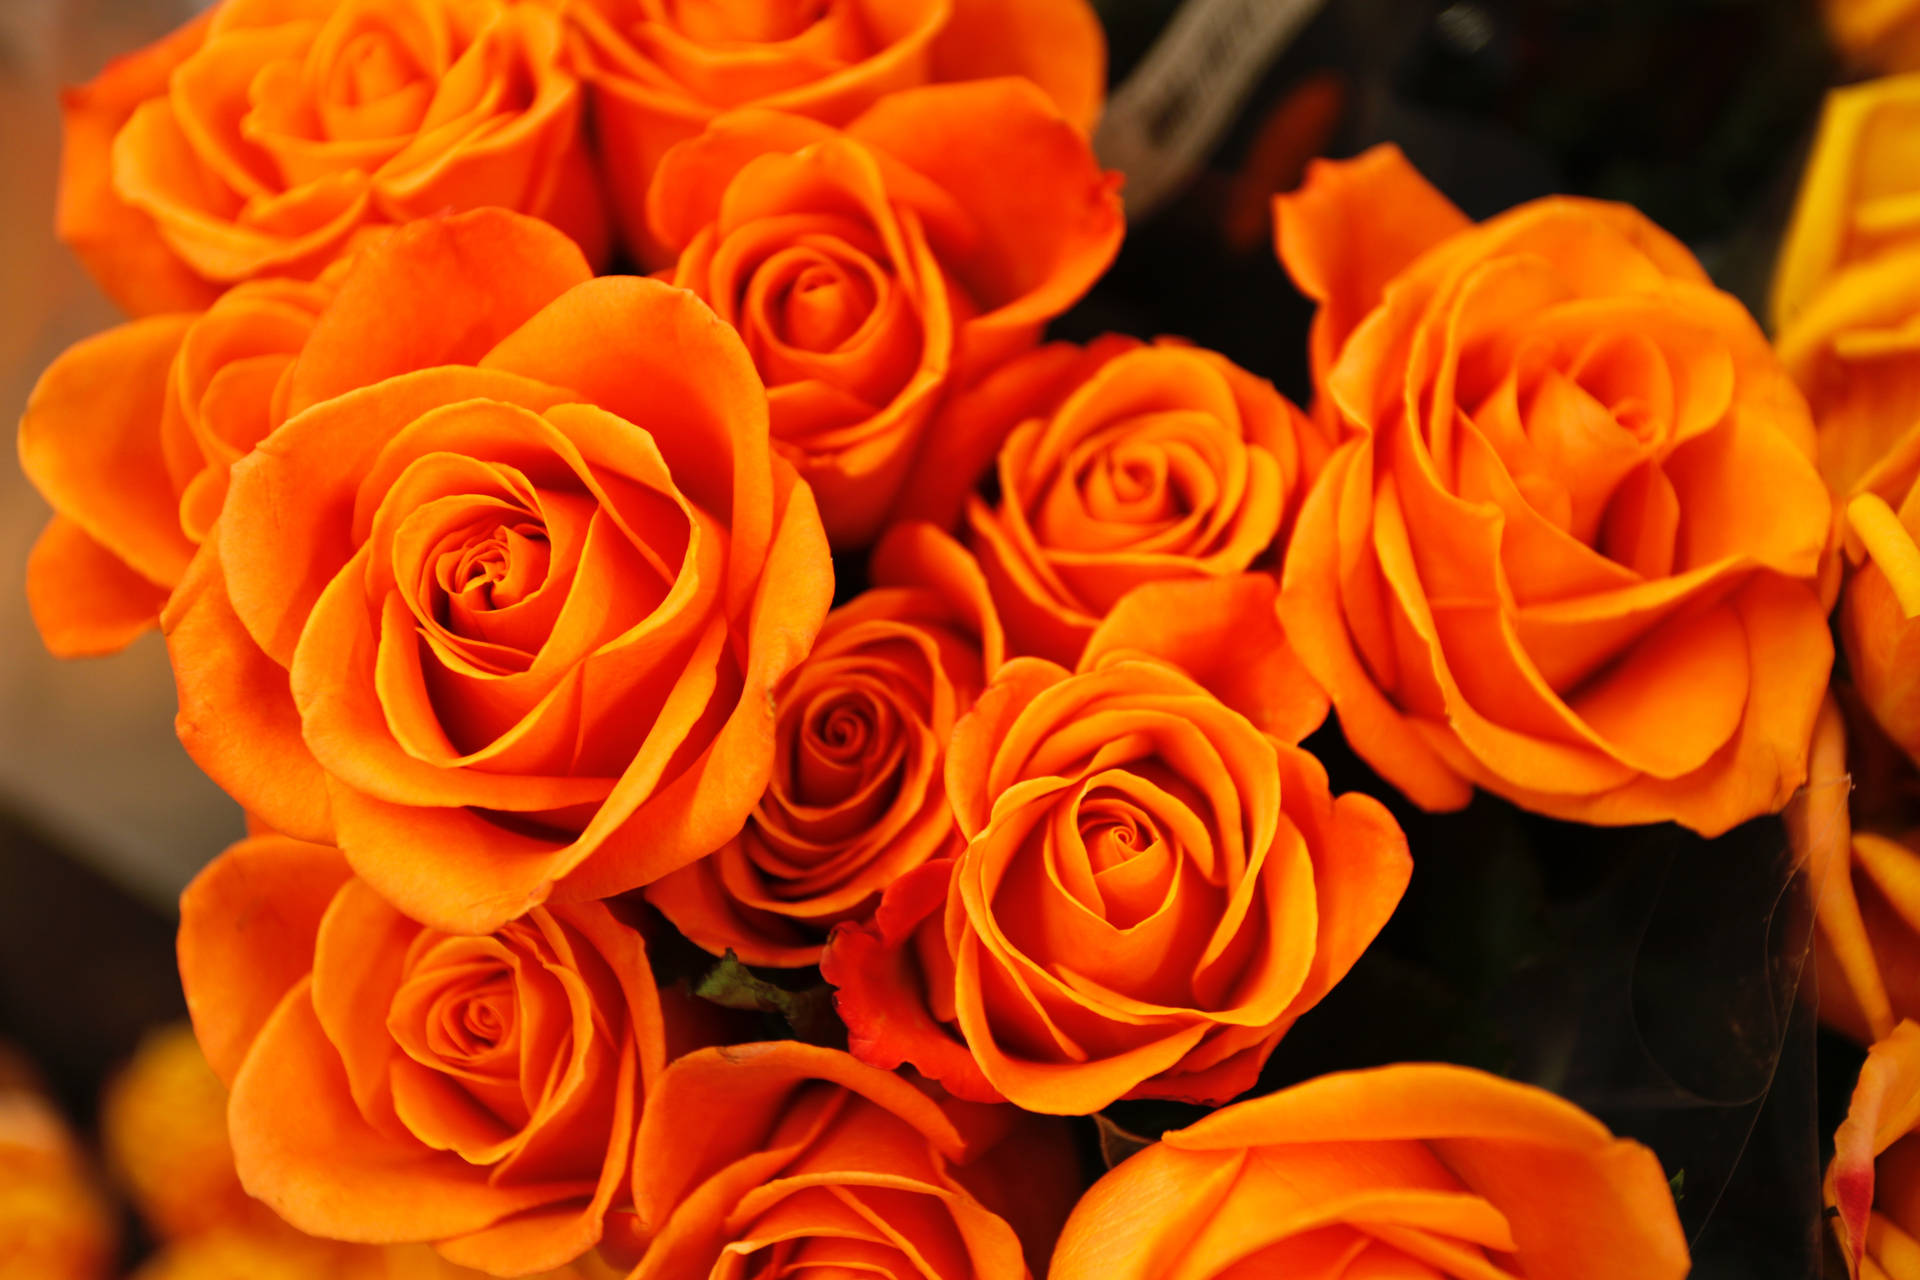 Hoa hồng cam - Cùng chiêm ngưỡng những bông hoa hồng cam tươi tắn, mát mẻ và sáng khoái với hình ảnh tuyệt đẹp. Màu cam đồng nghĩa với sự phấn chấn và hứng khởi, vì thế bạn sẽ rất thích thú khi được chiêm ngưỡng những hình ảnh hoa hồng cam rực rỡ này!